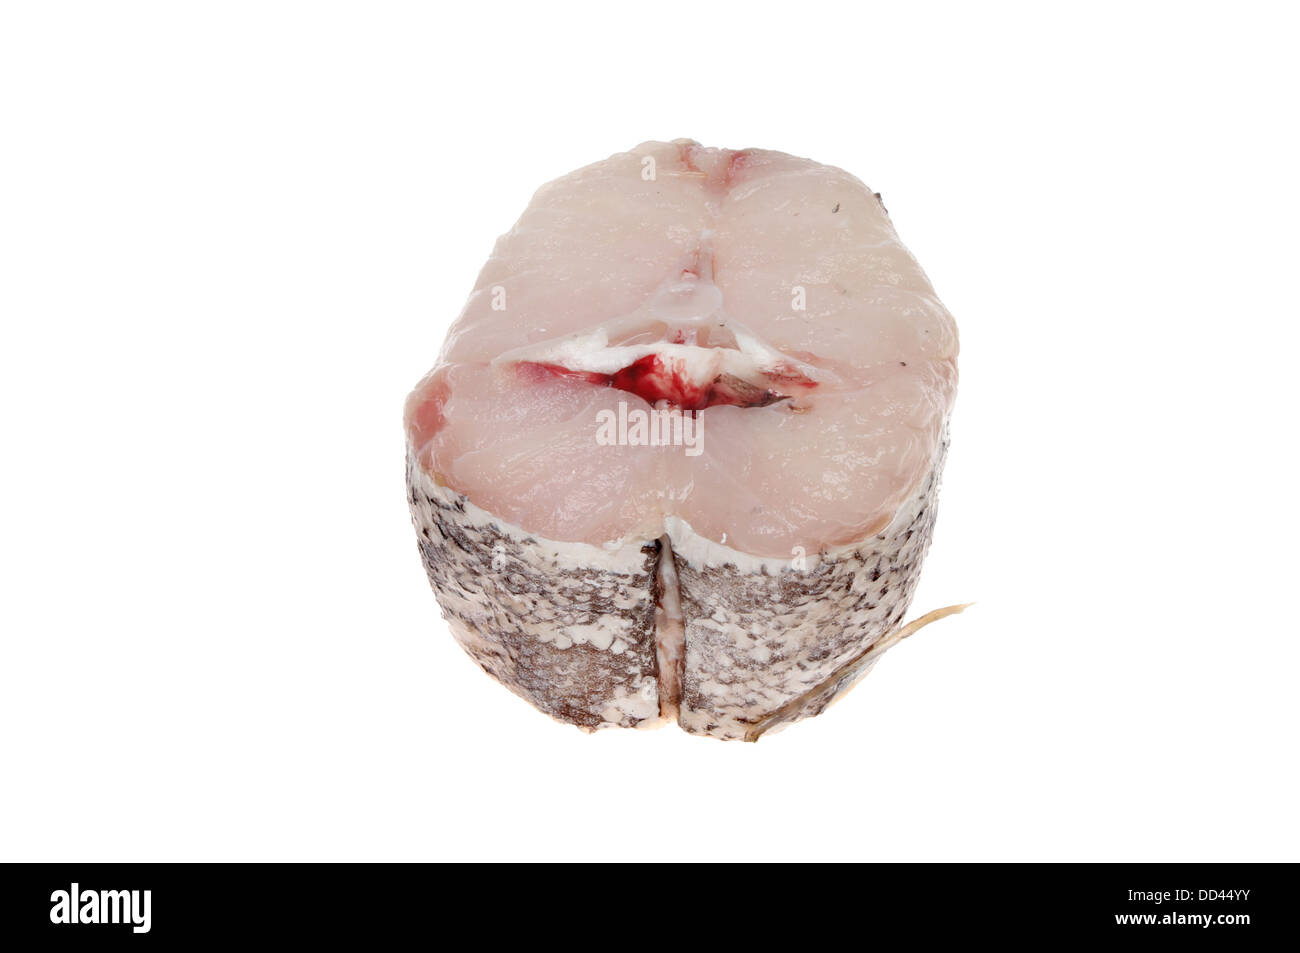 Raw hake fish steak isolated against white Stock Photo